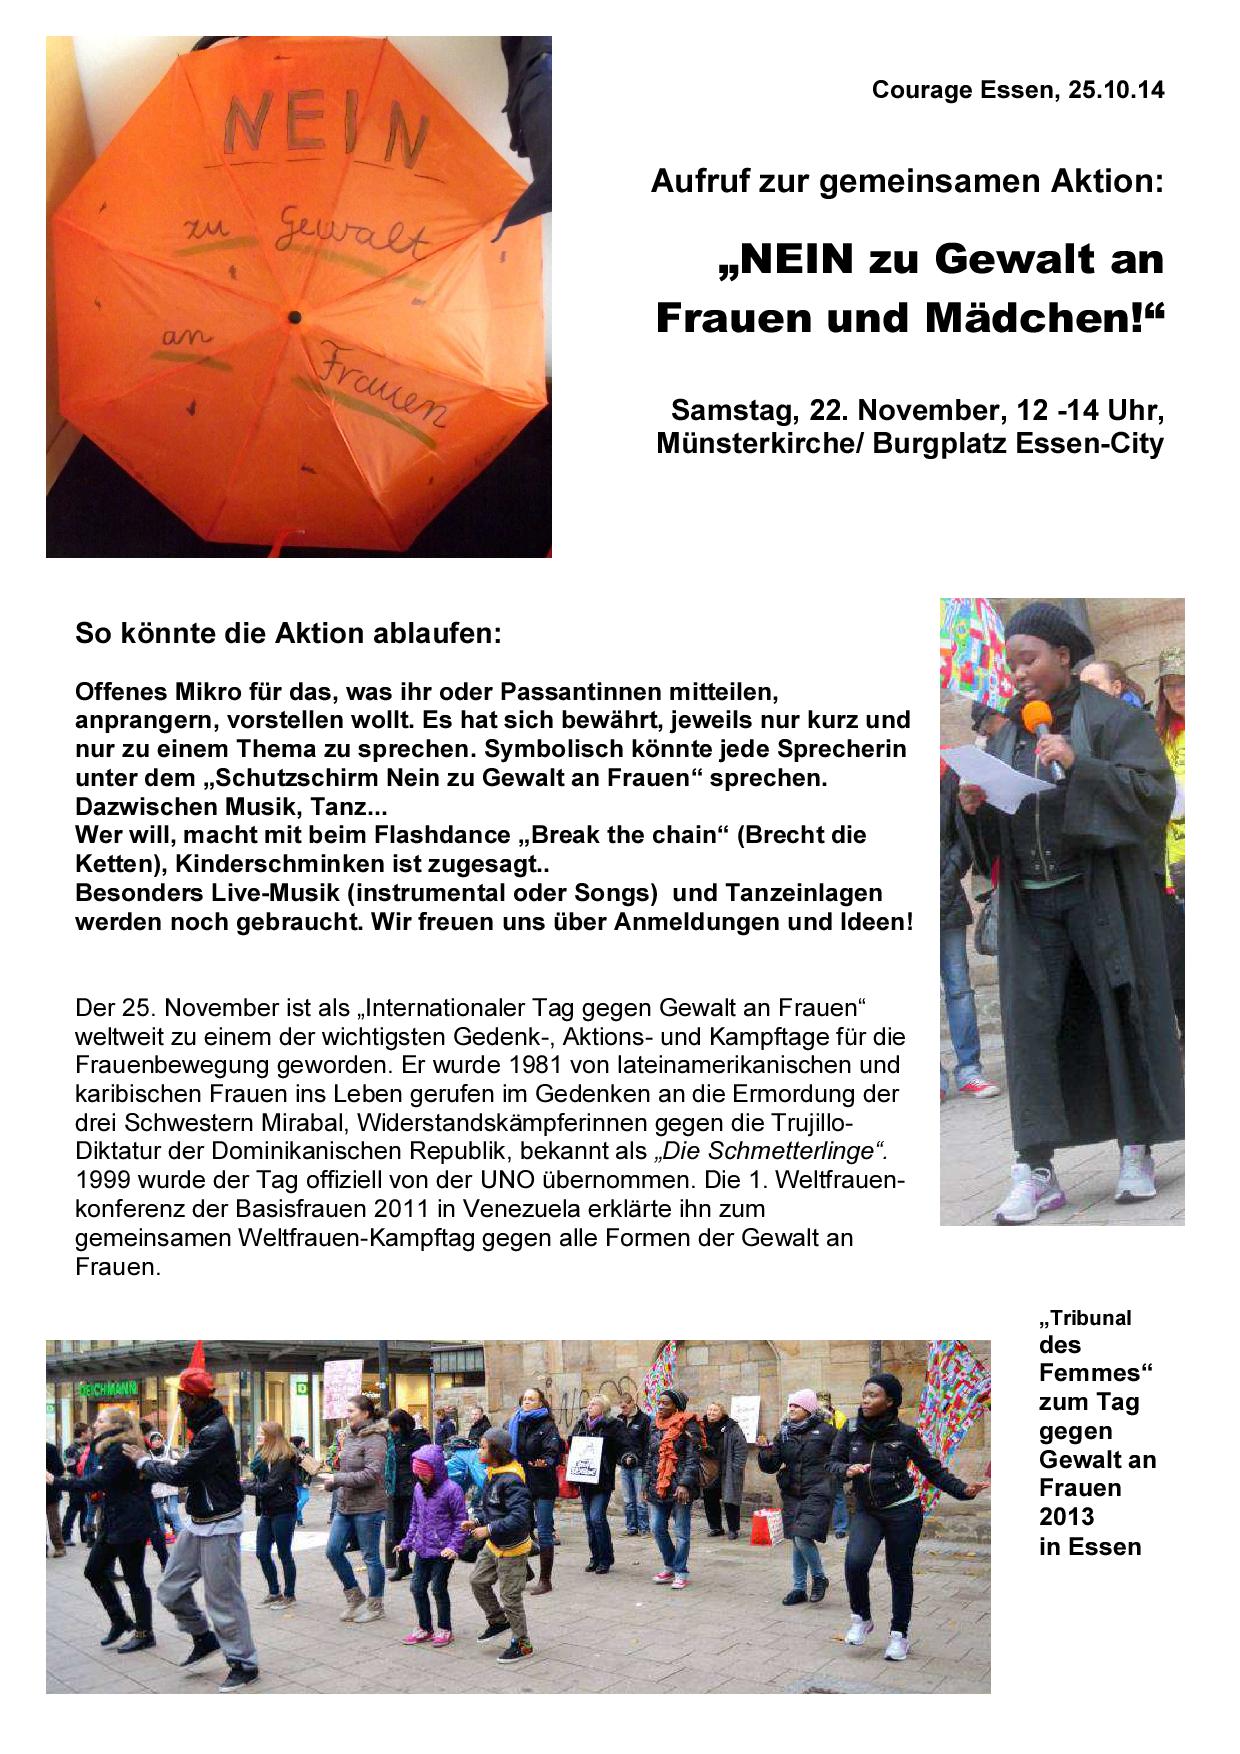 Aufruf zum Aktionsbündnis gegen Gewalt an Frauen, 22.11., 12-14 Uhr, Münsterkirche